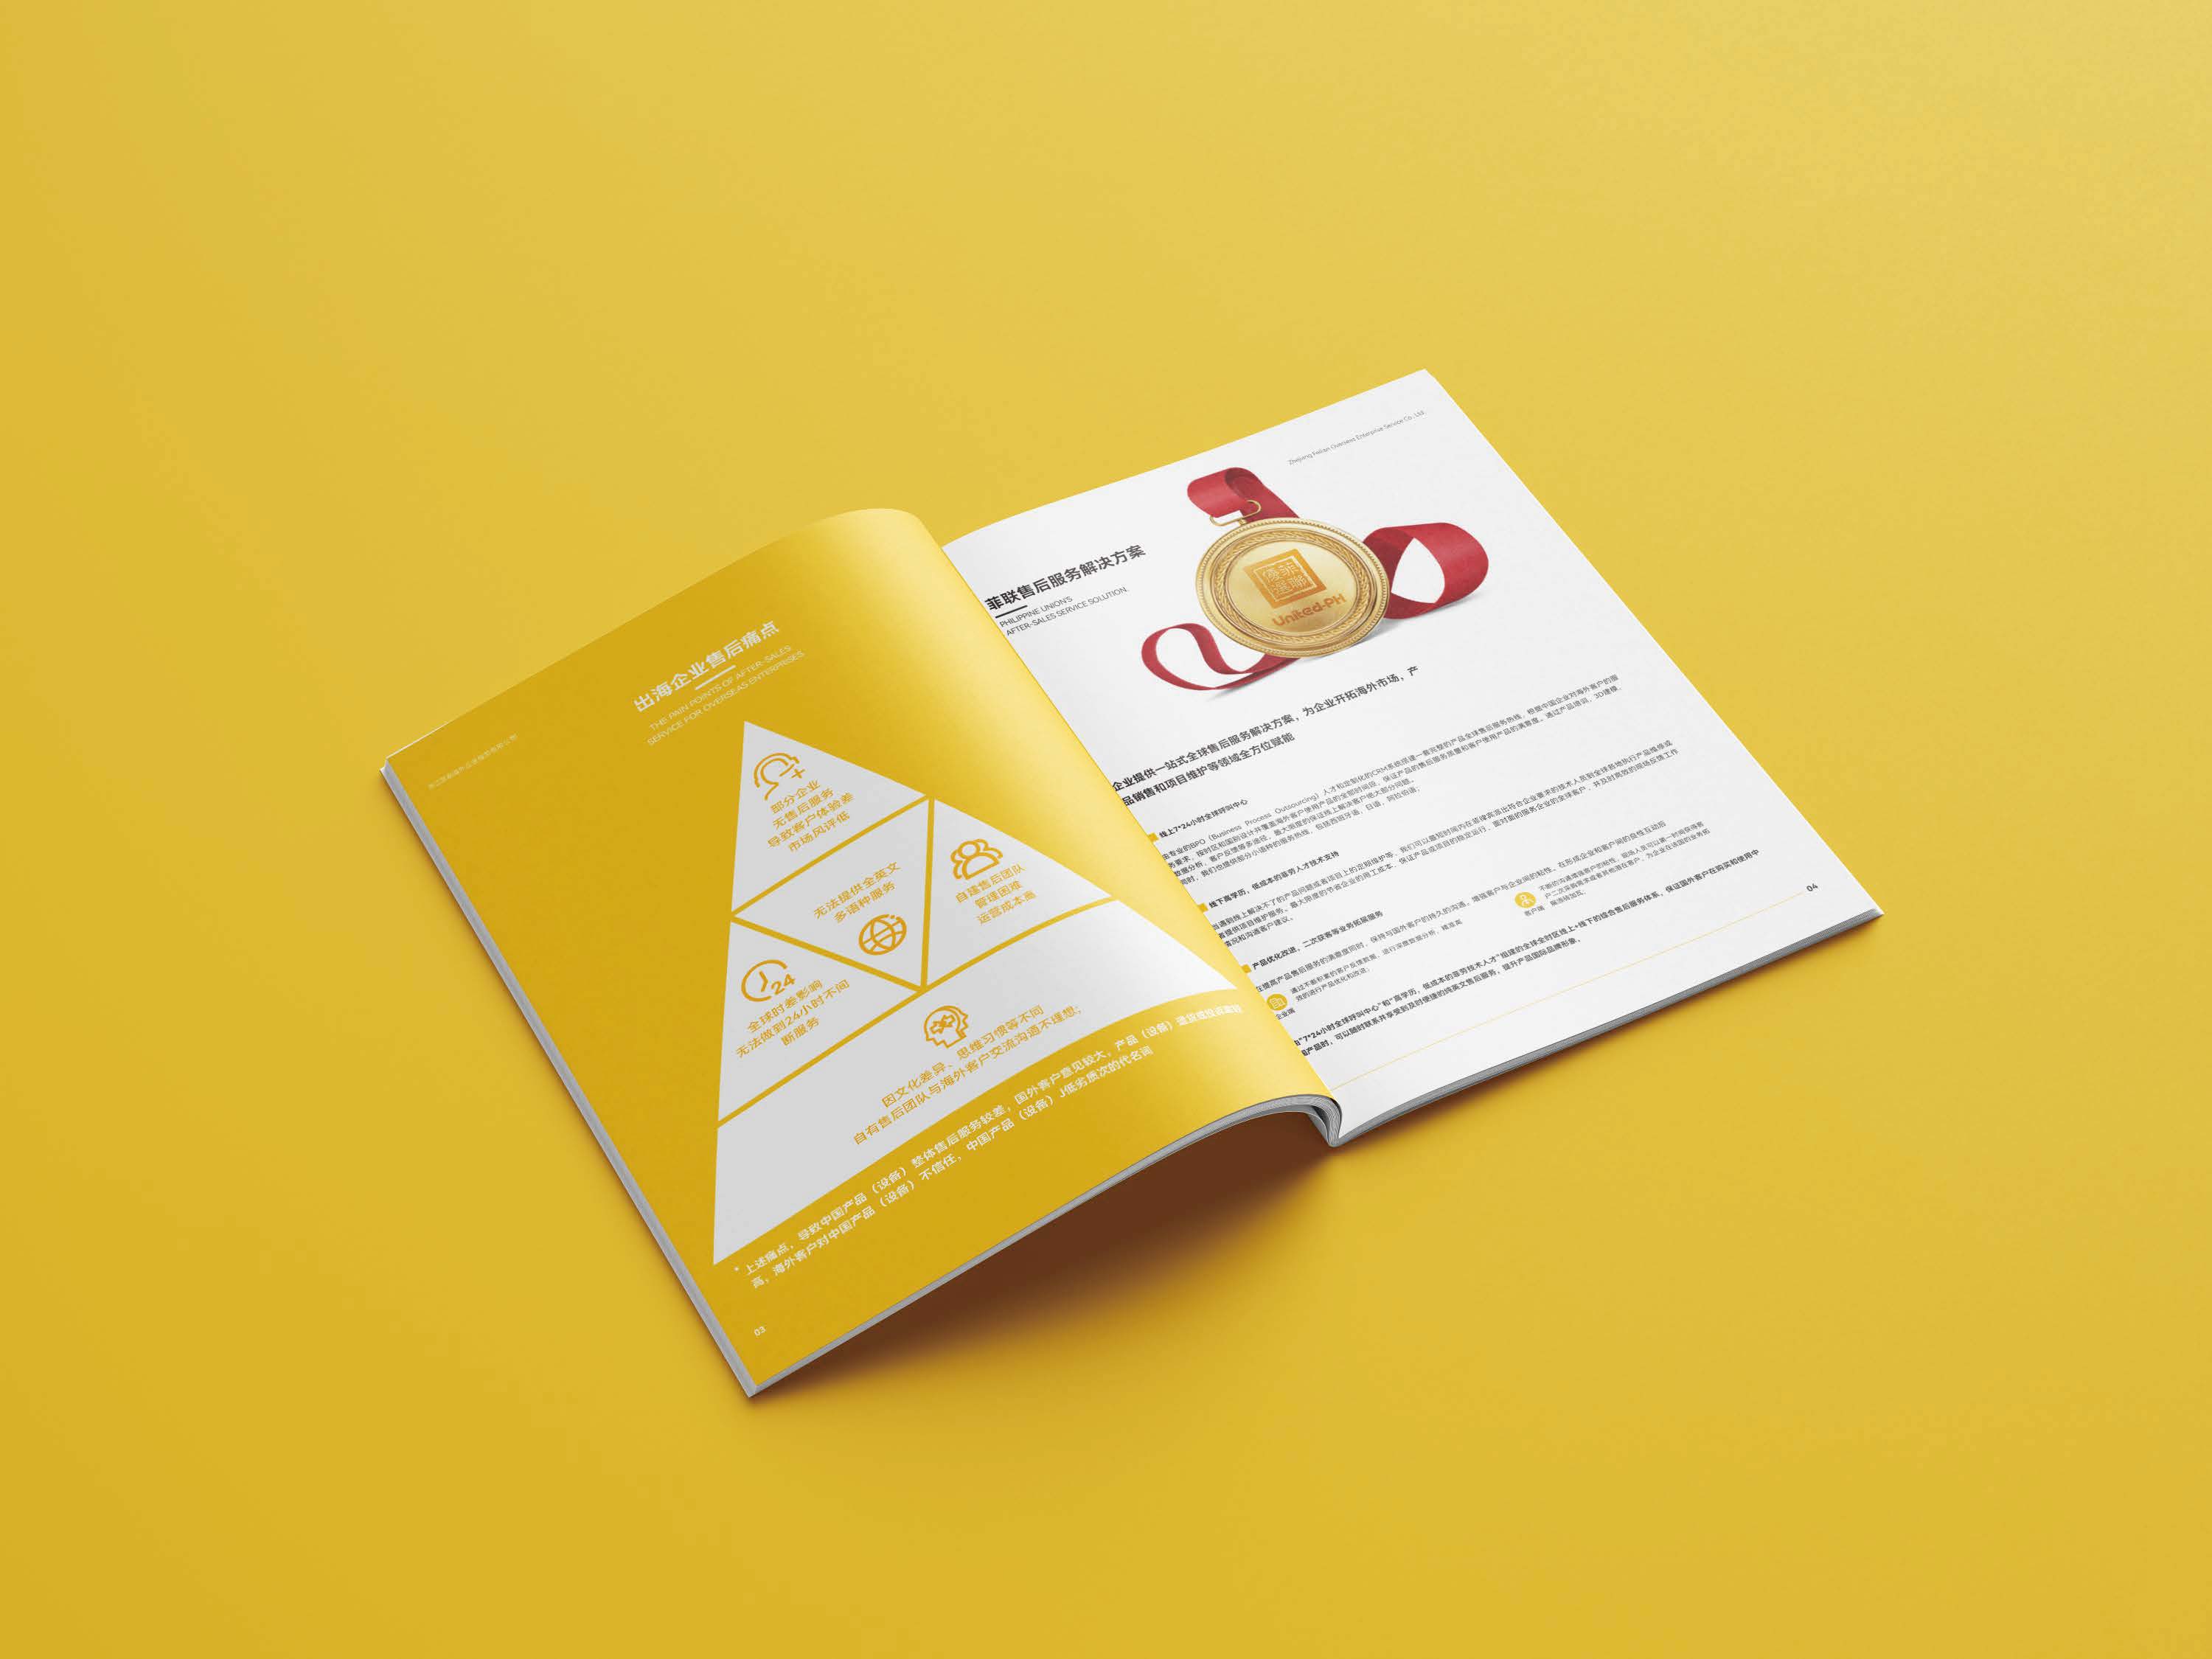 菲联企业画册设计 宣传册手册设计 招商画册设计